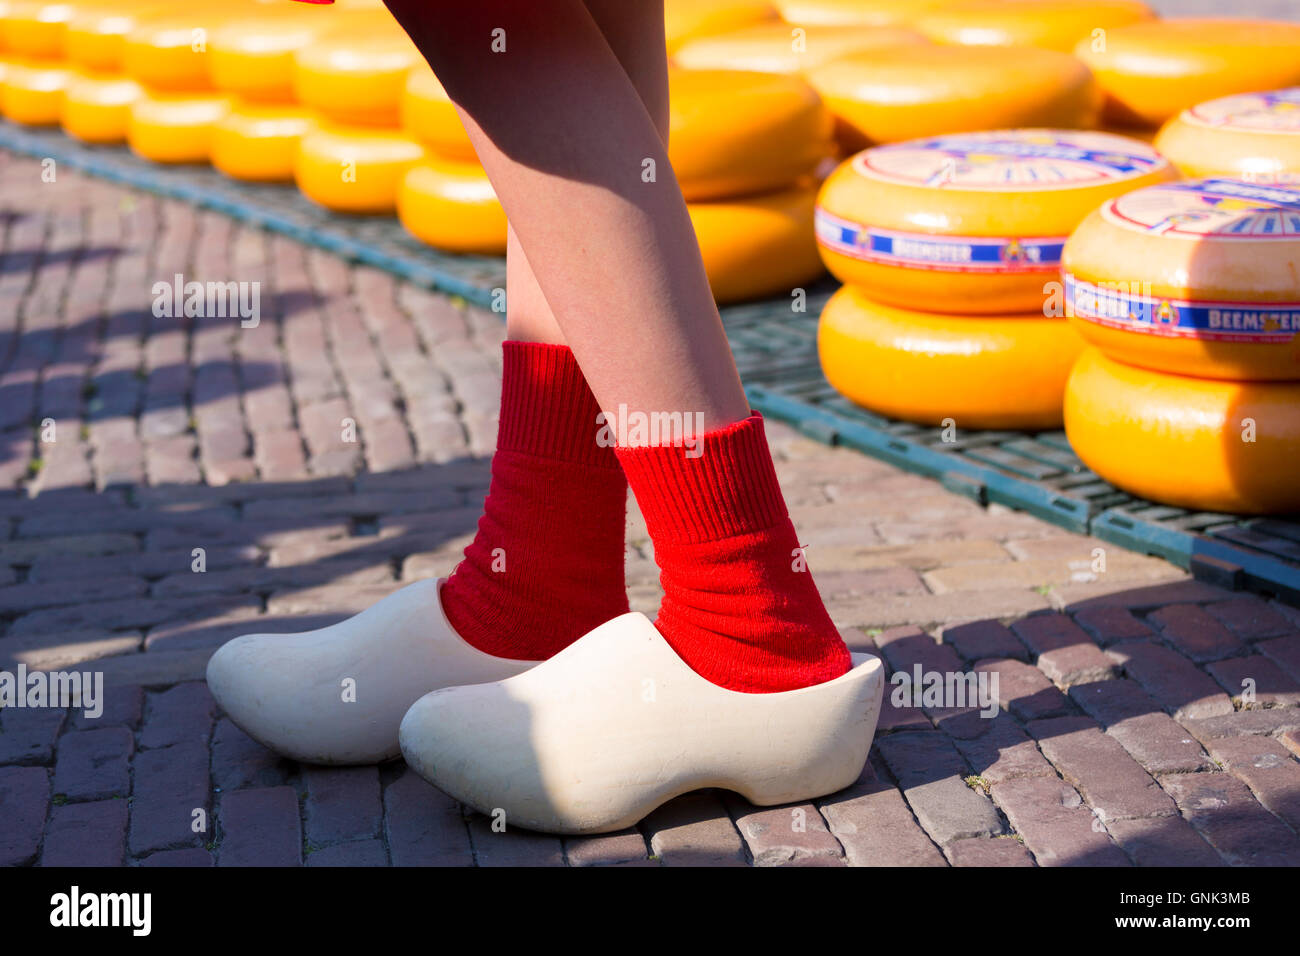 Holländische Holzschuhe traditionelle Schuhe und Socken getragen von Frau  Kaasmeisje, Käsemarkt in Alkmaar, Niederlande Stockfotografie - Alamy